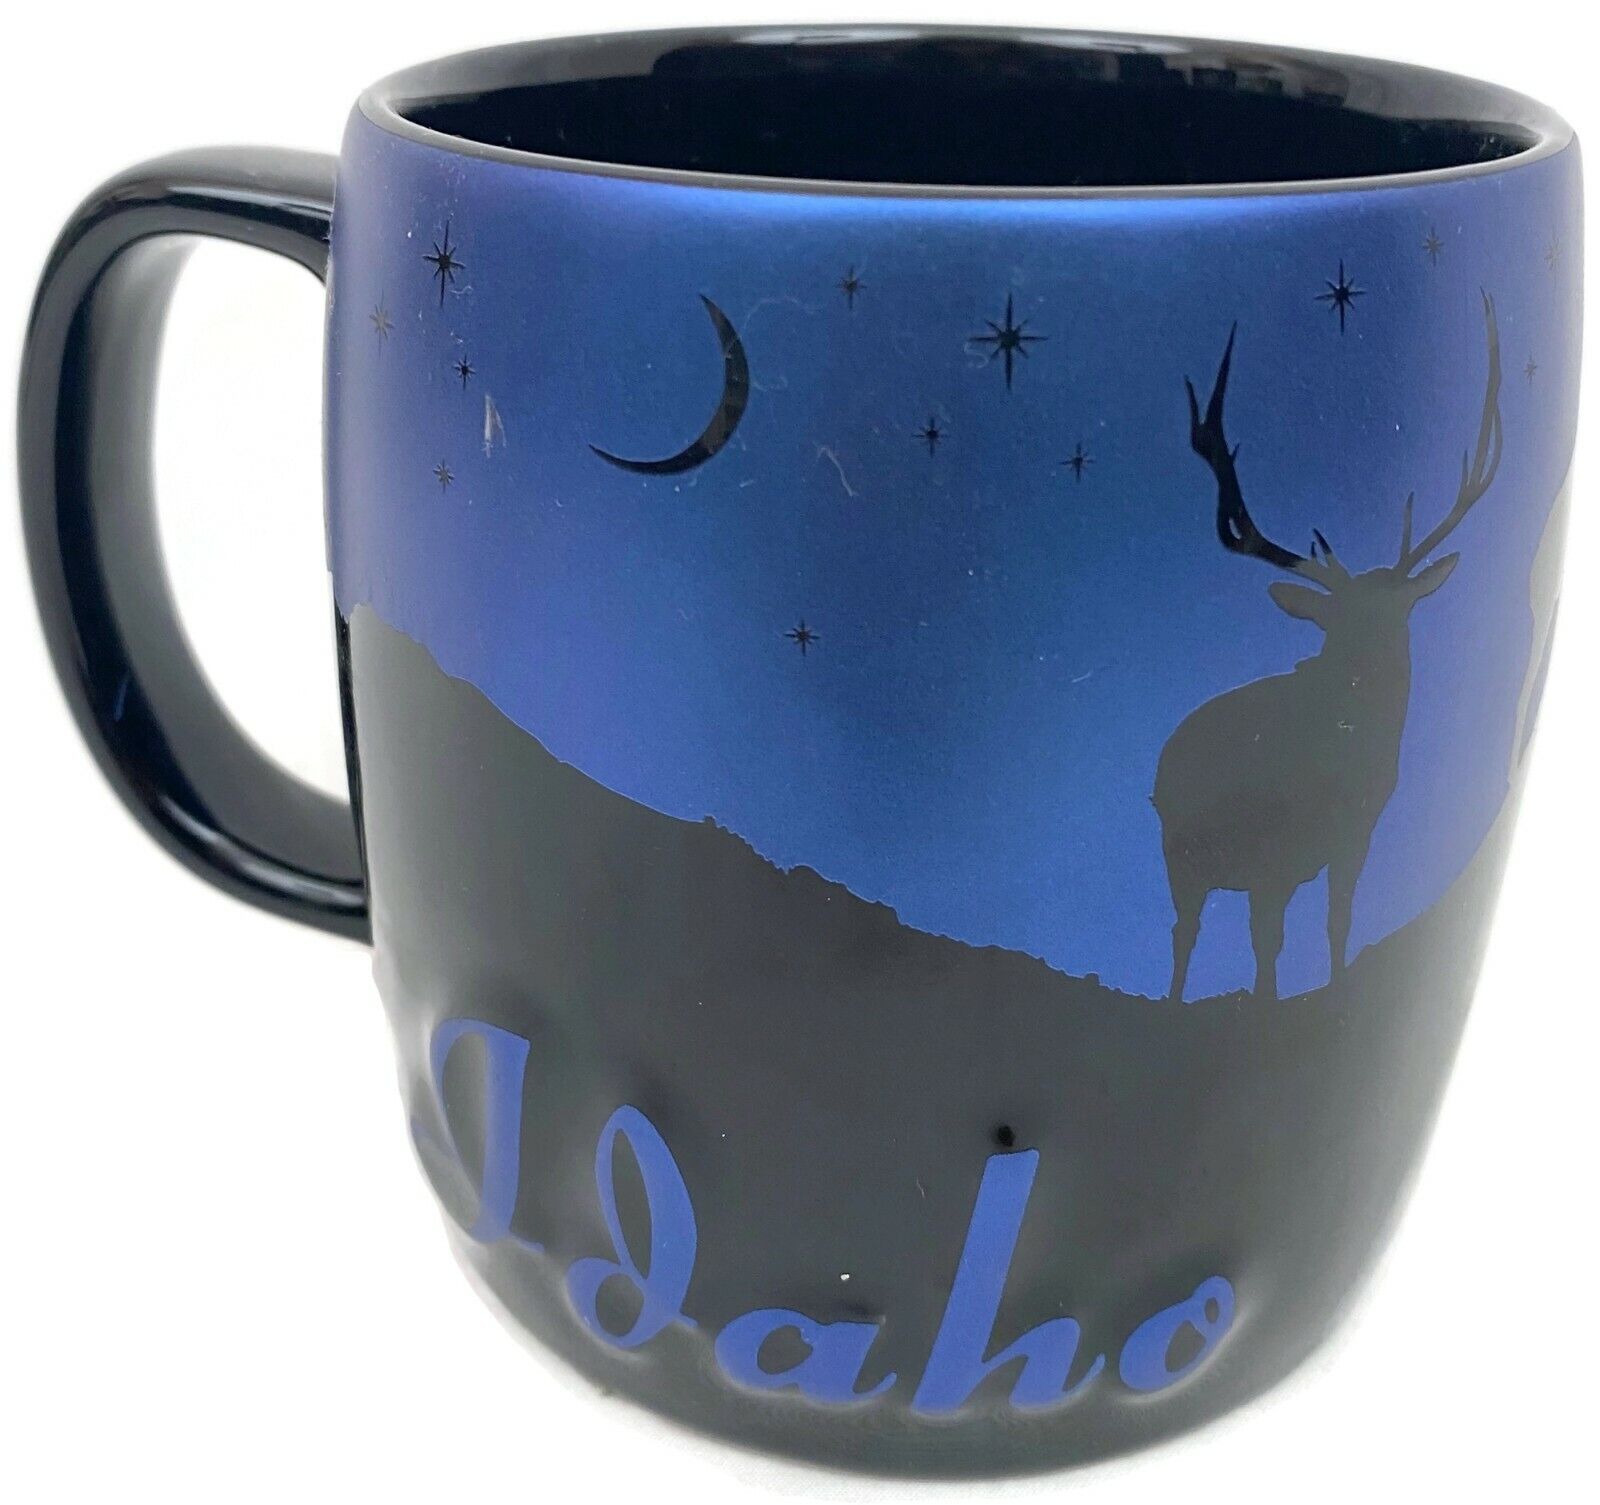 Americaware Idaho Coffee Mug Night Sky Silhouette Blue Black 22 oz